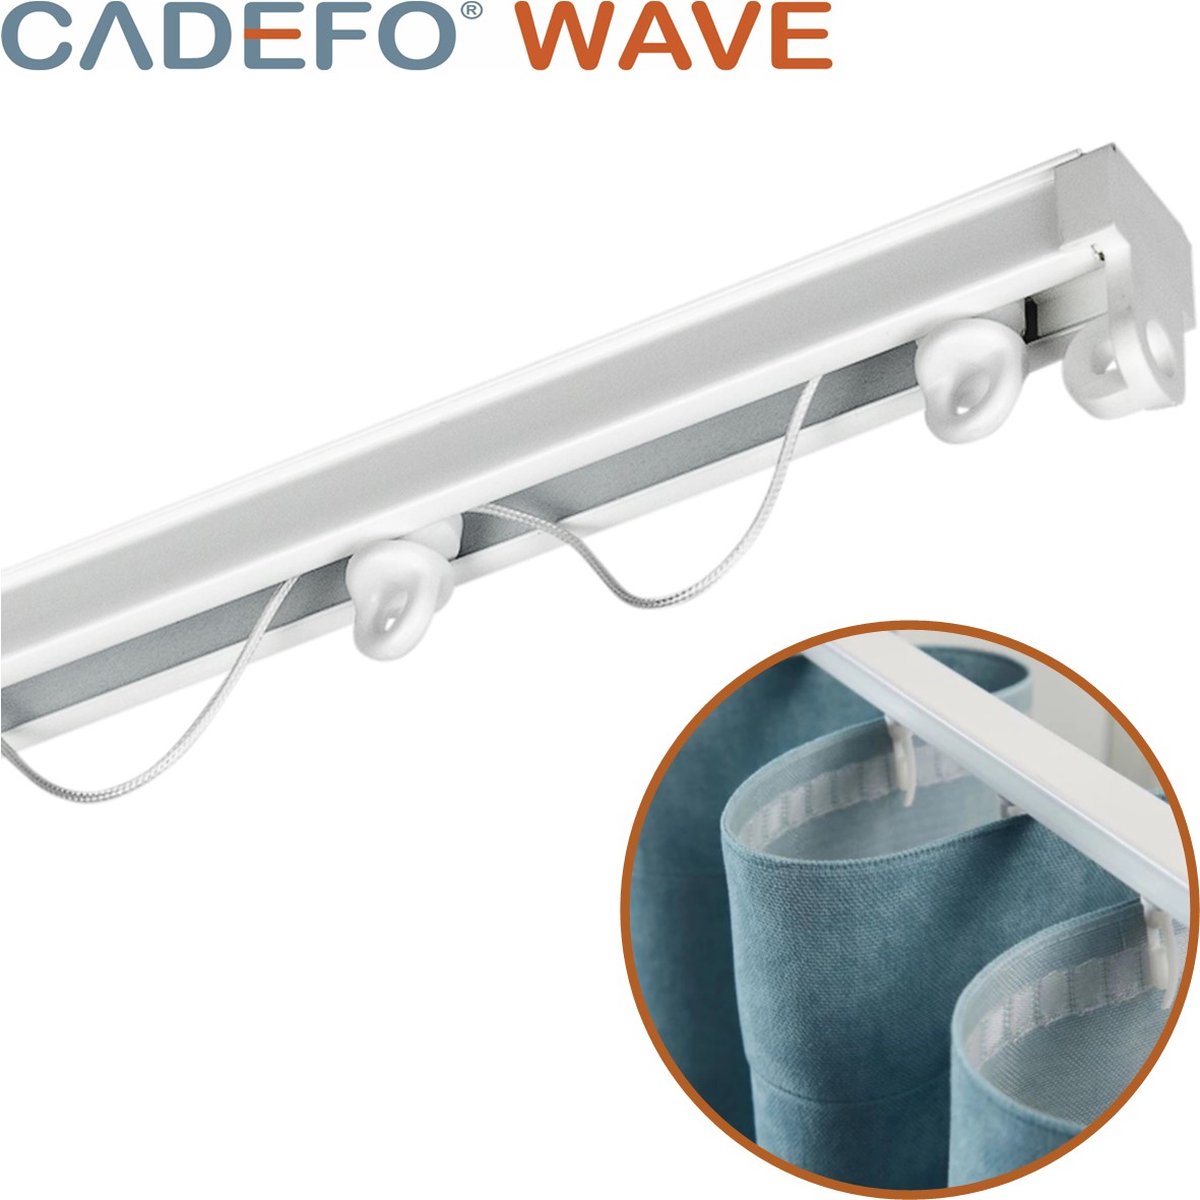 CADEFO WAVE (501 - 550 cm) Gordijnrails - Compleet op maat! - UIT 1 STUK - Leverbaar tot 6 meter - Plafondbevestiging - Lengte 550 cm - 5,5 meter